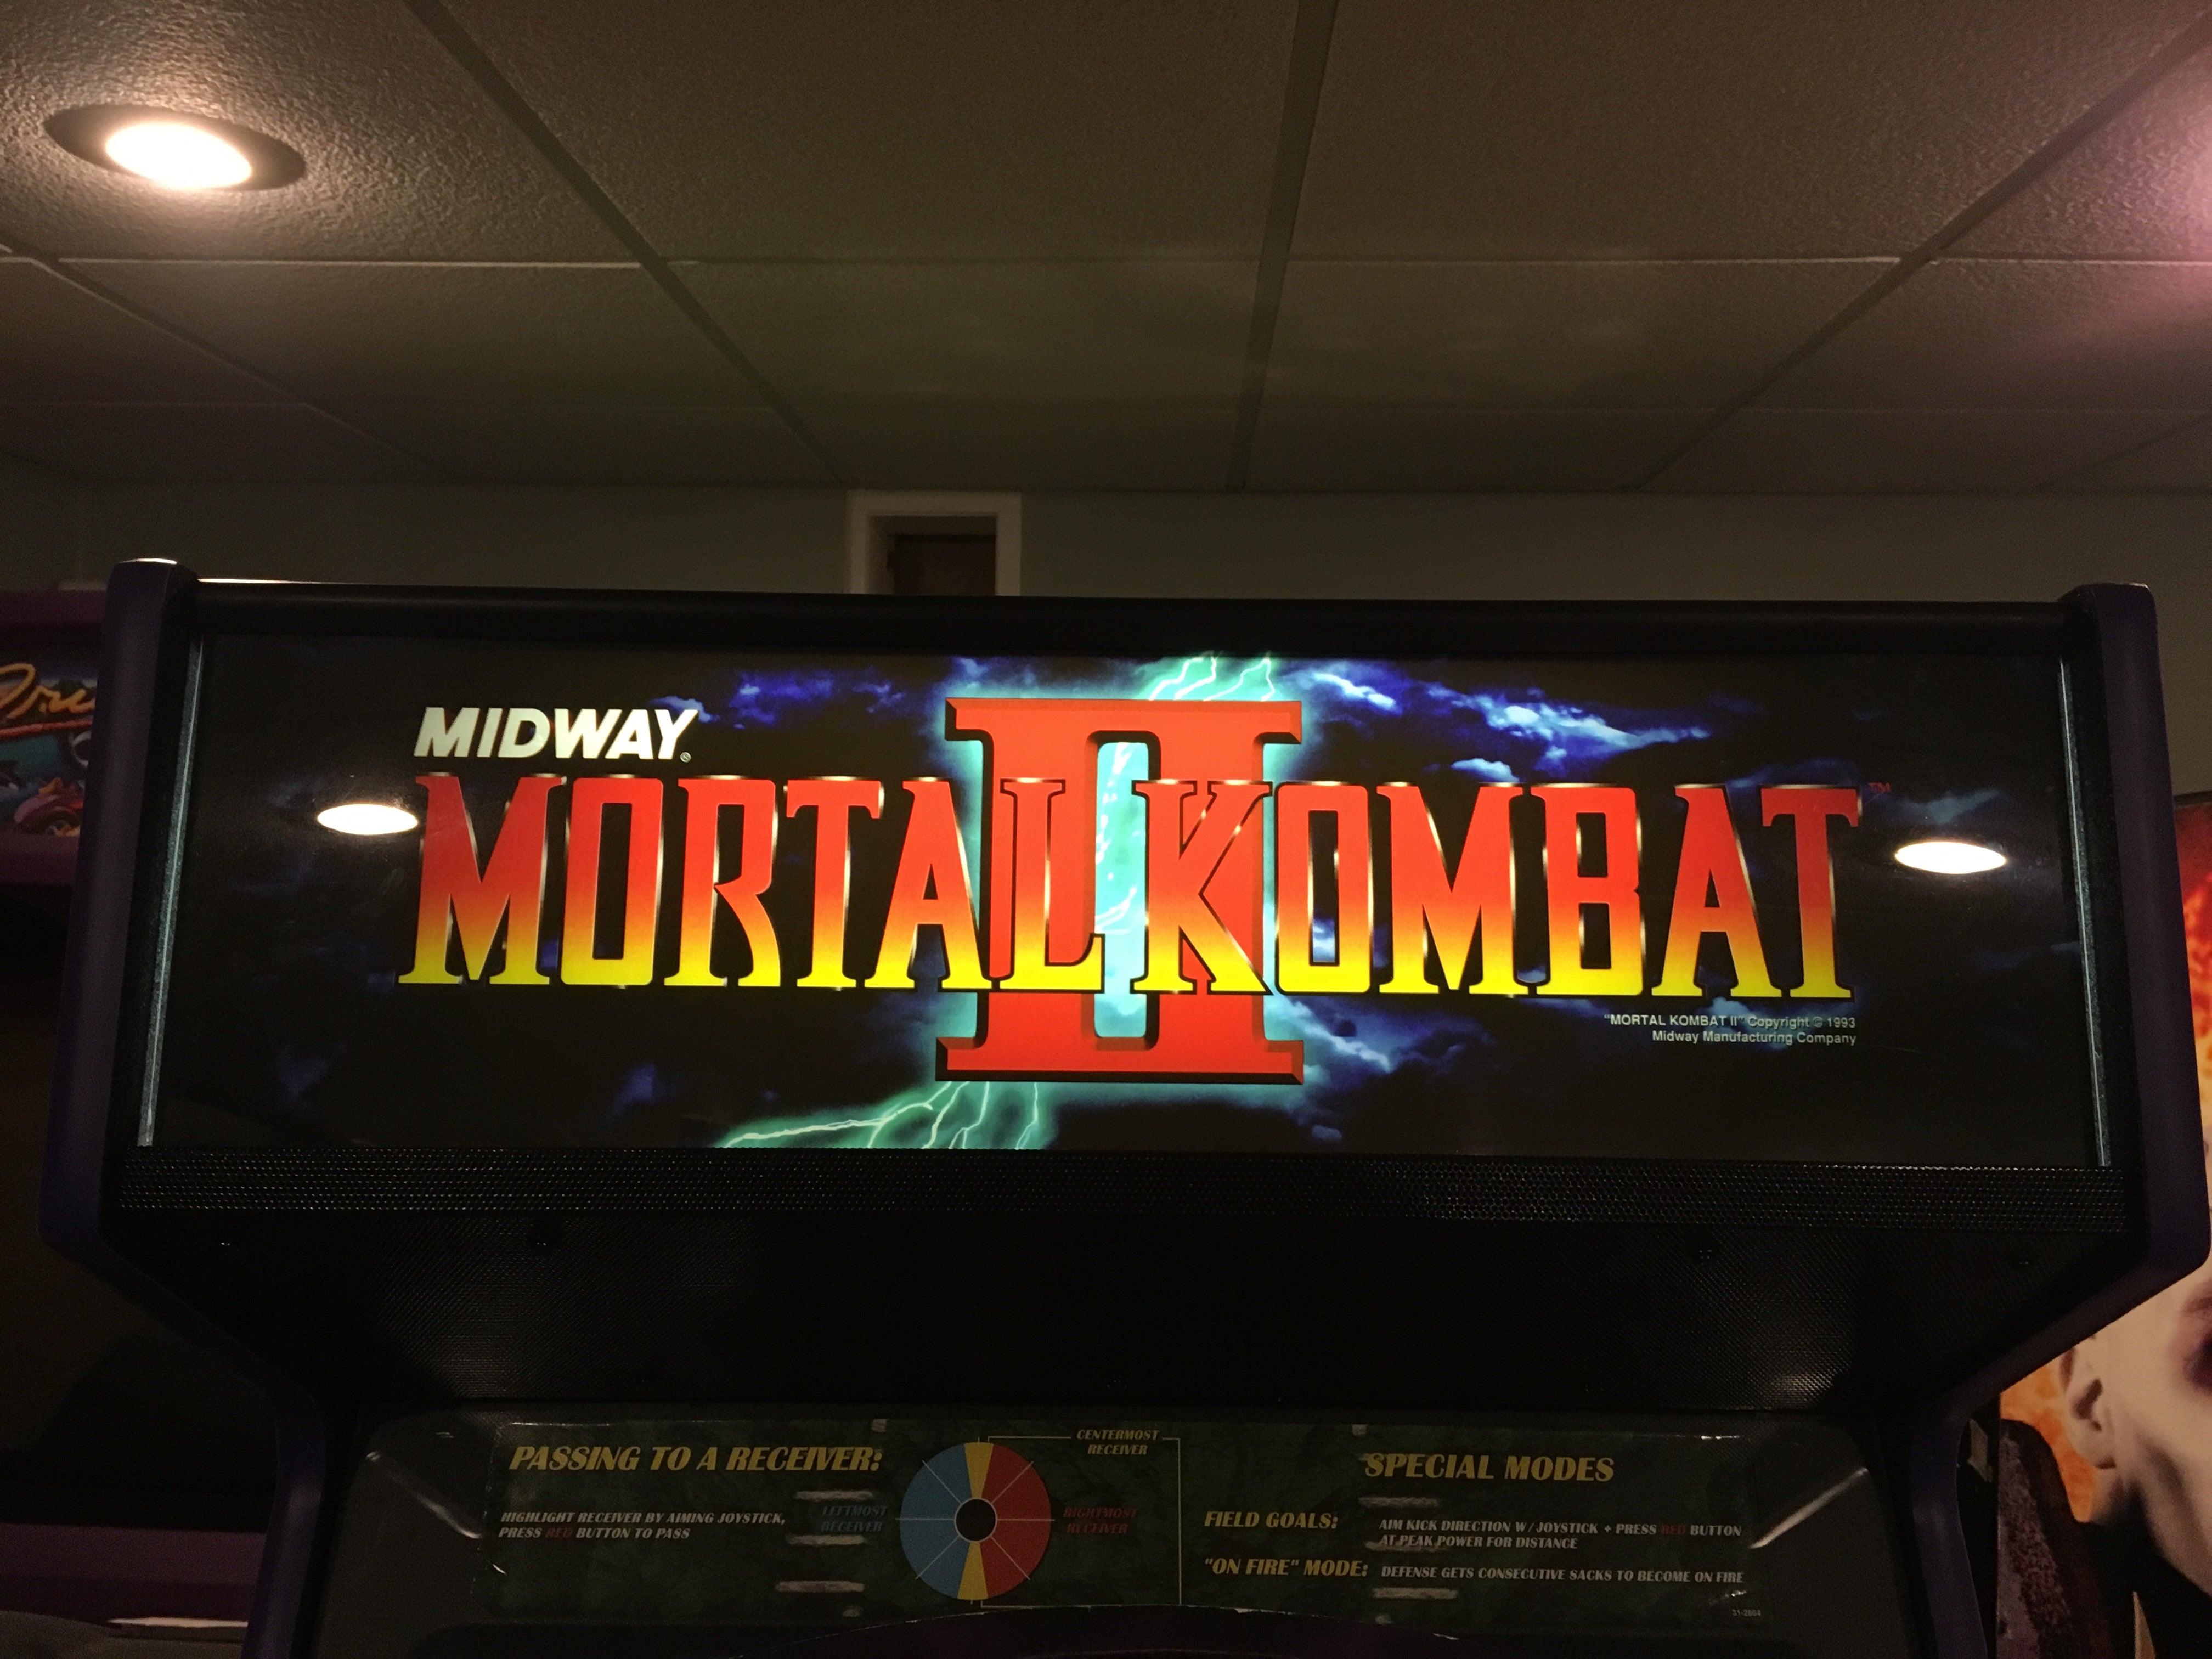 Chapiteau Mortal Kombat 2